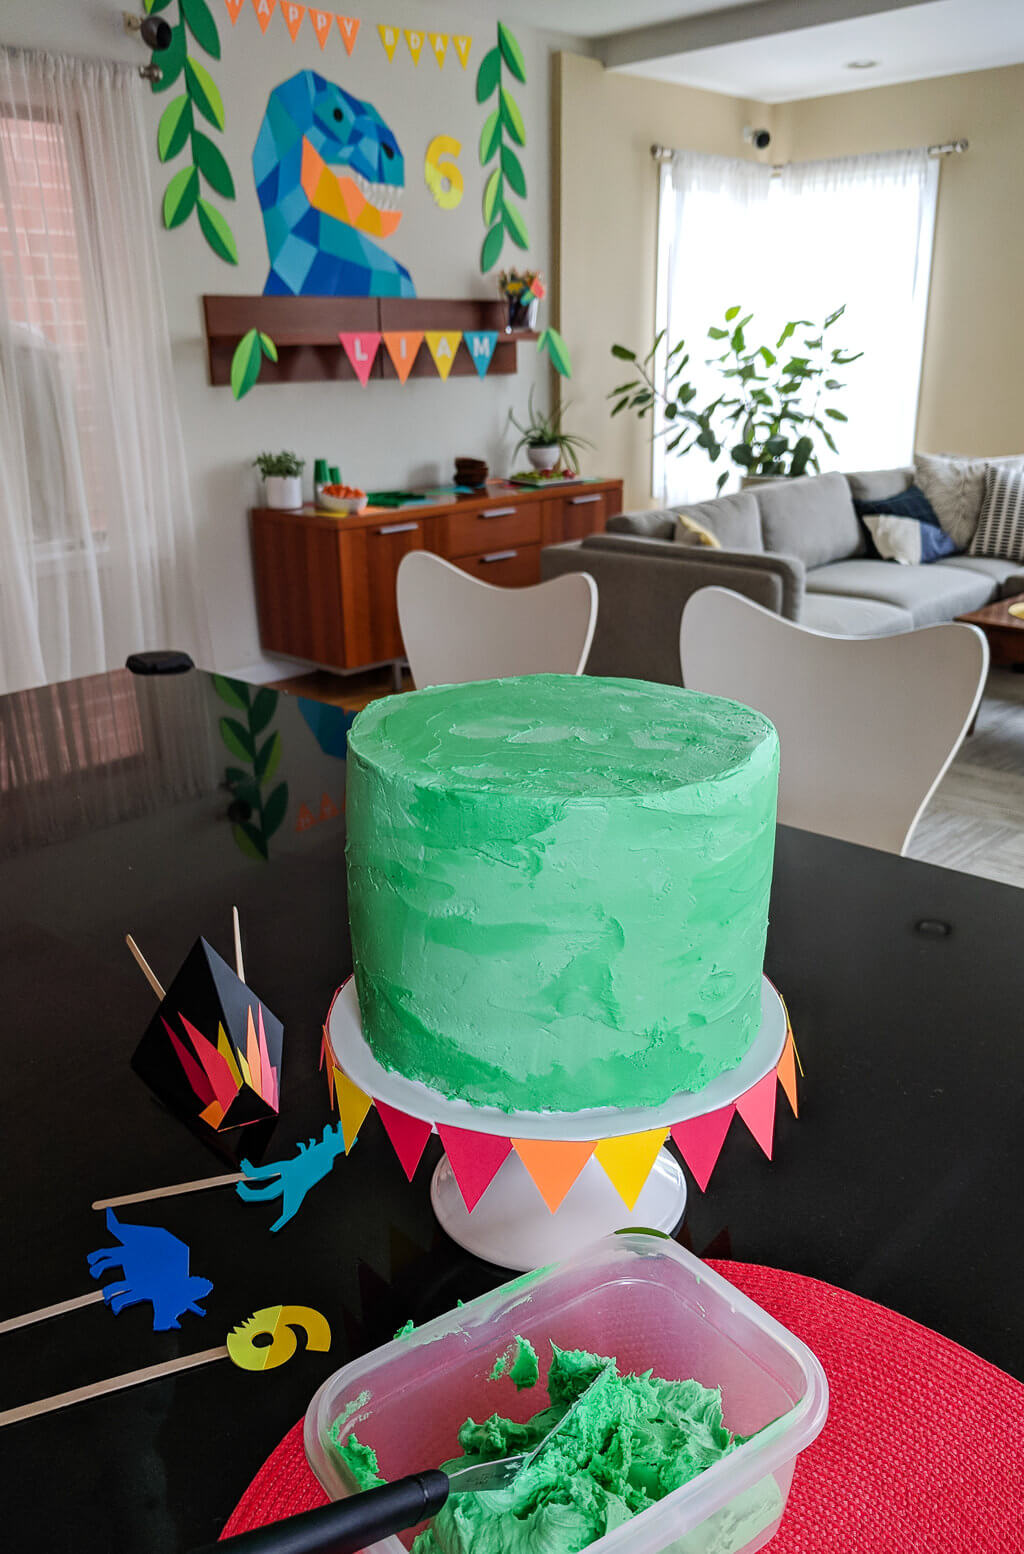 Making a dinosaur cake